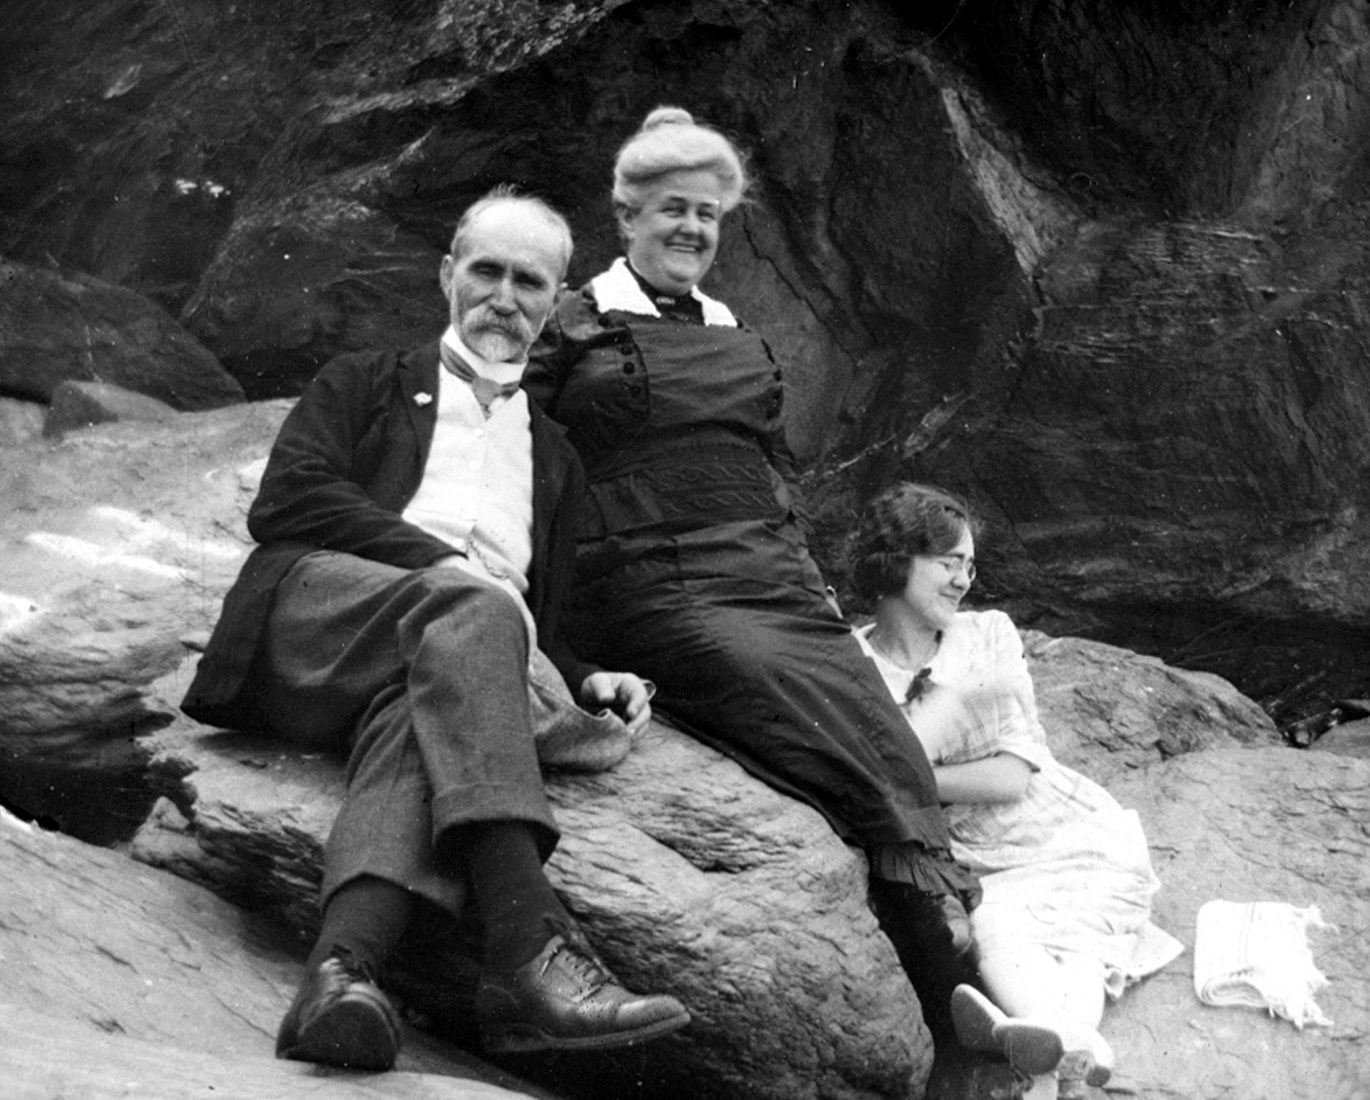 Des adultes plutôt distingués (un couple d’âge mûr et une jeune fille) sont assis sur un rocher, détendus et souriants.